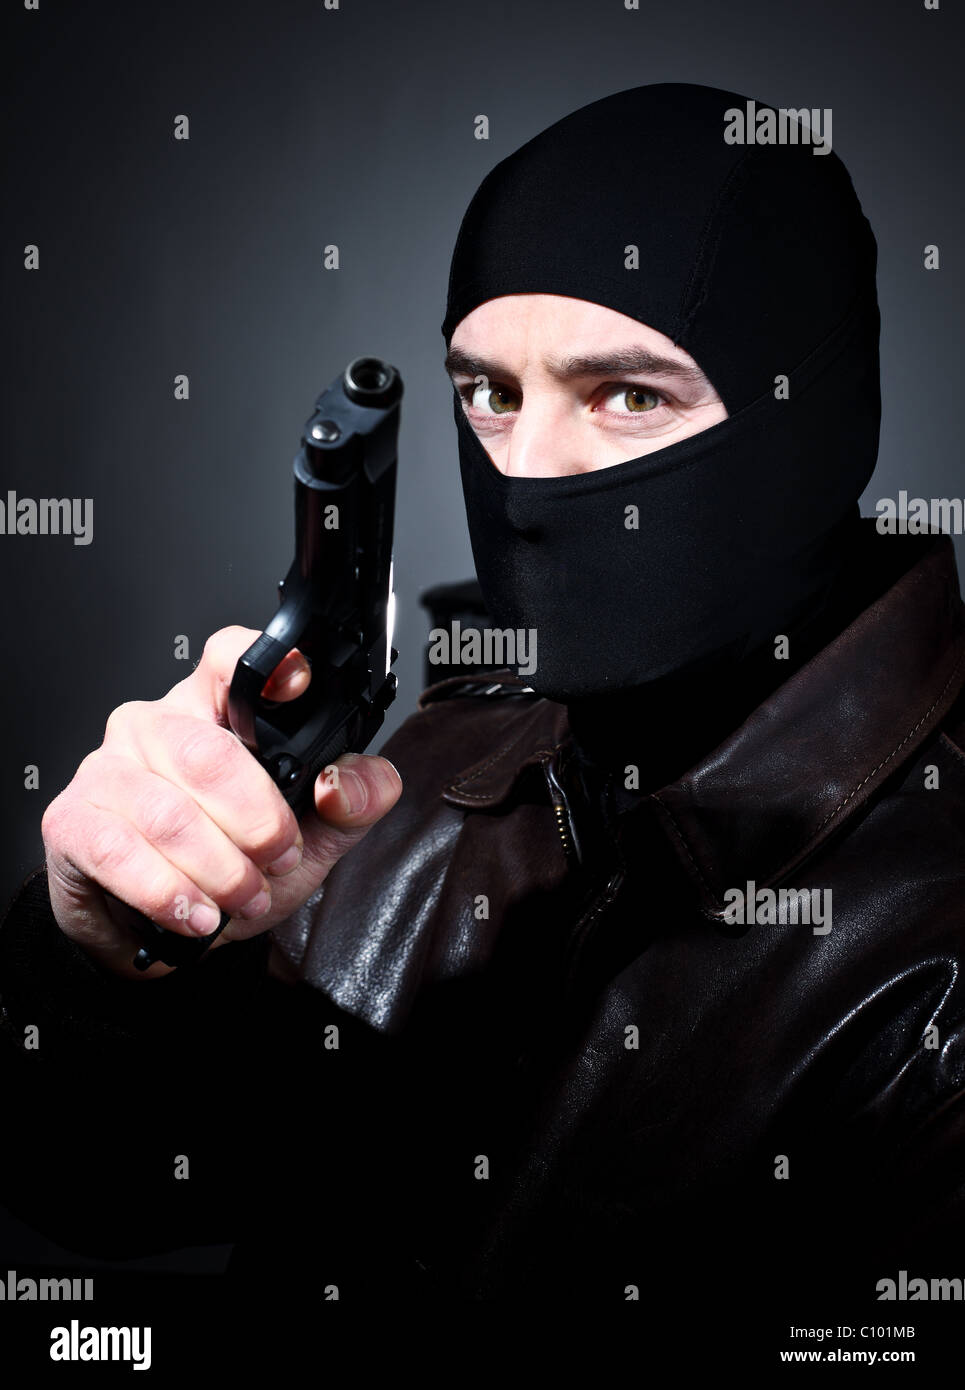 Ammenda closeup ritratto della holding criminale pistola Foto Stock